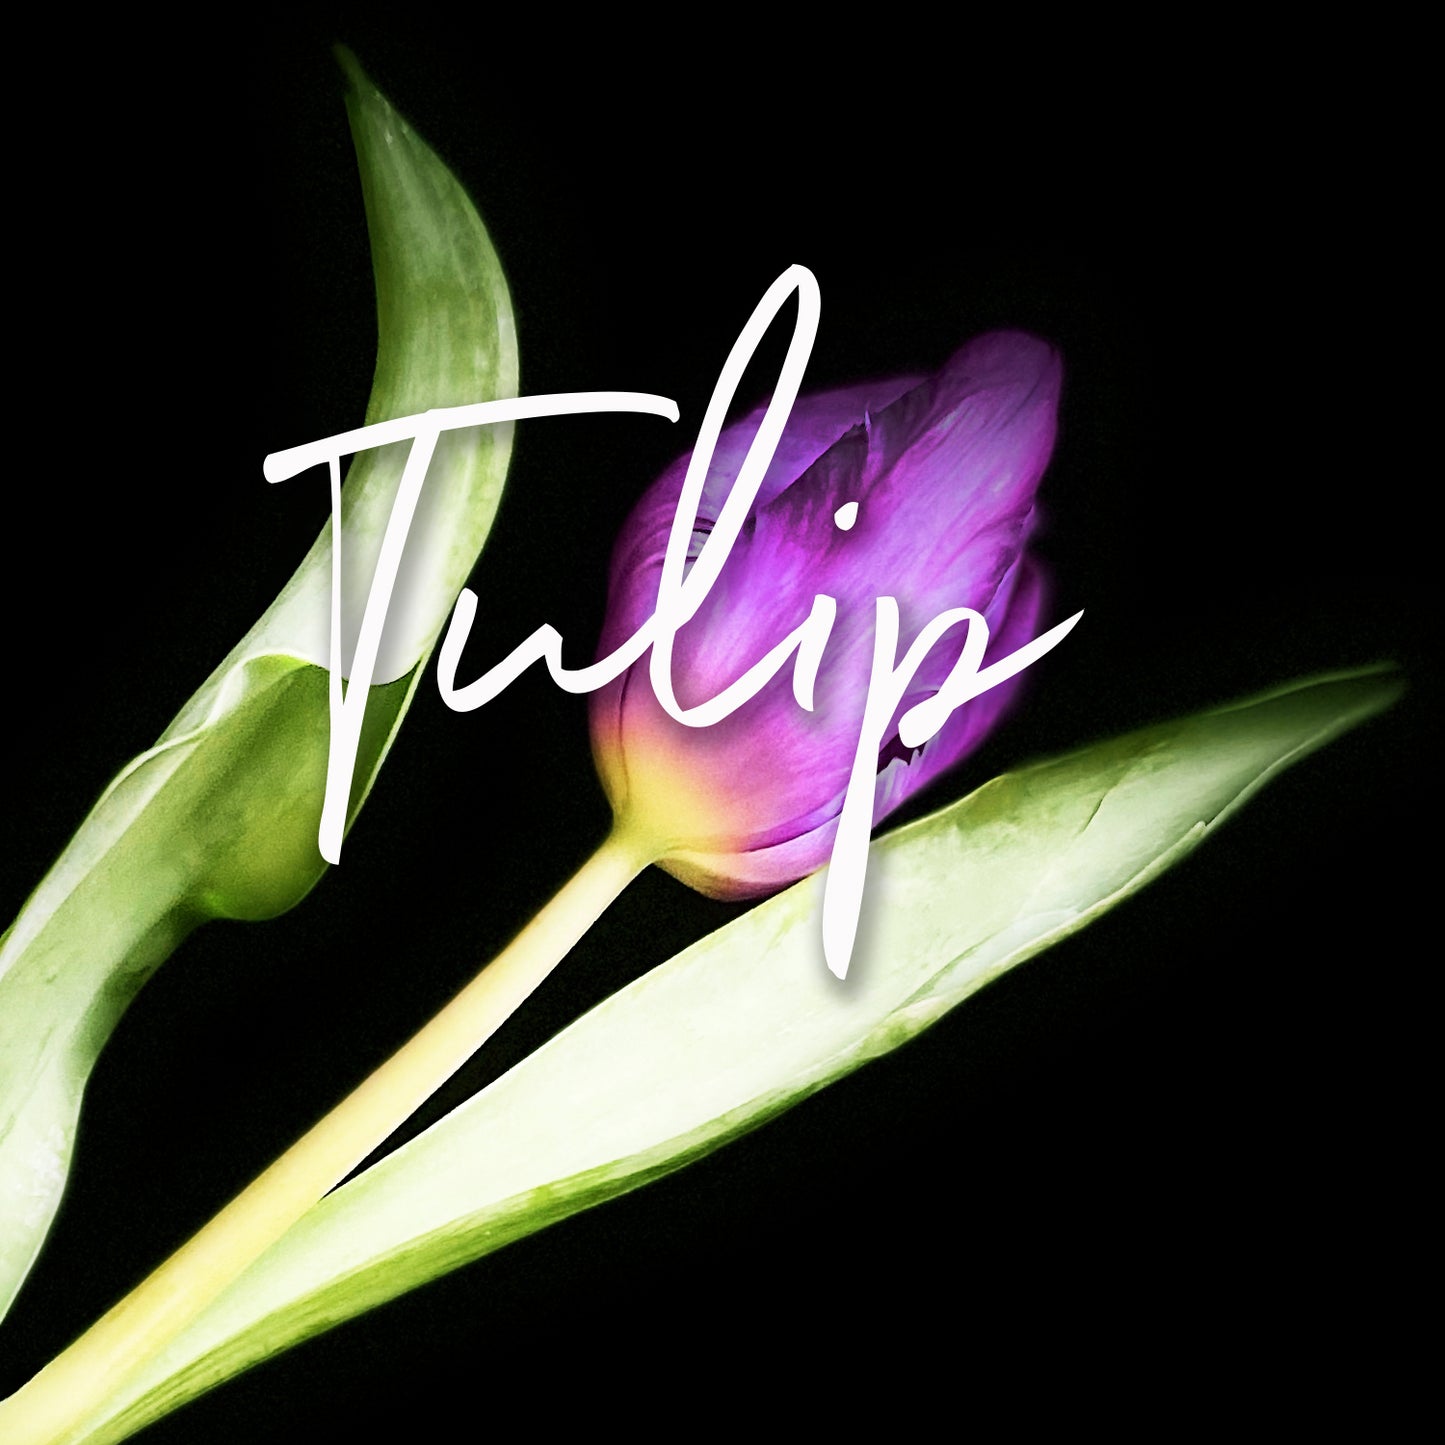 Behind the Bloom: Tulip